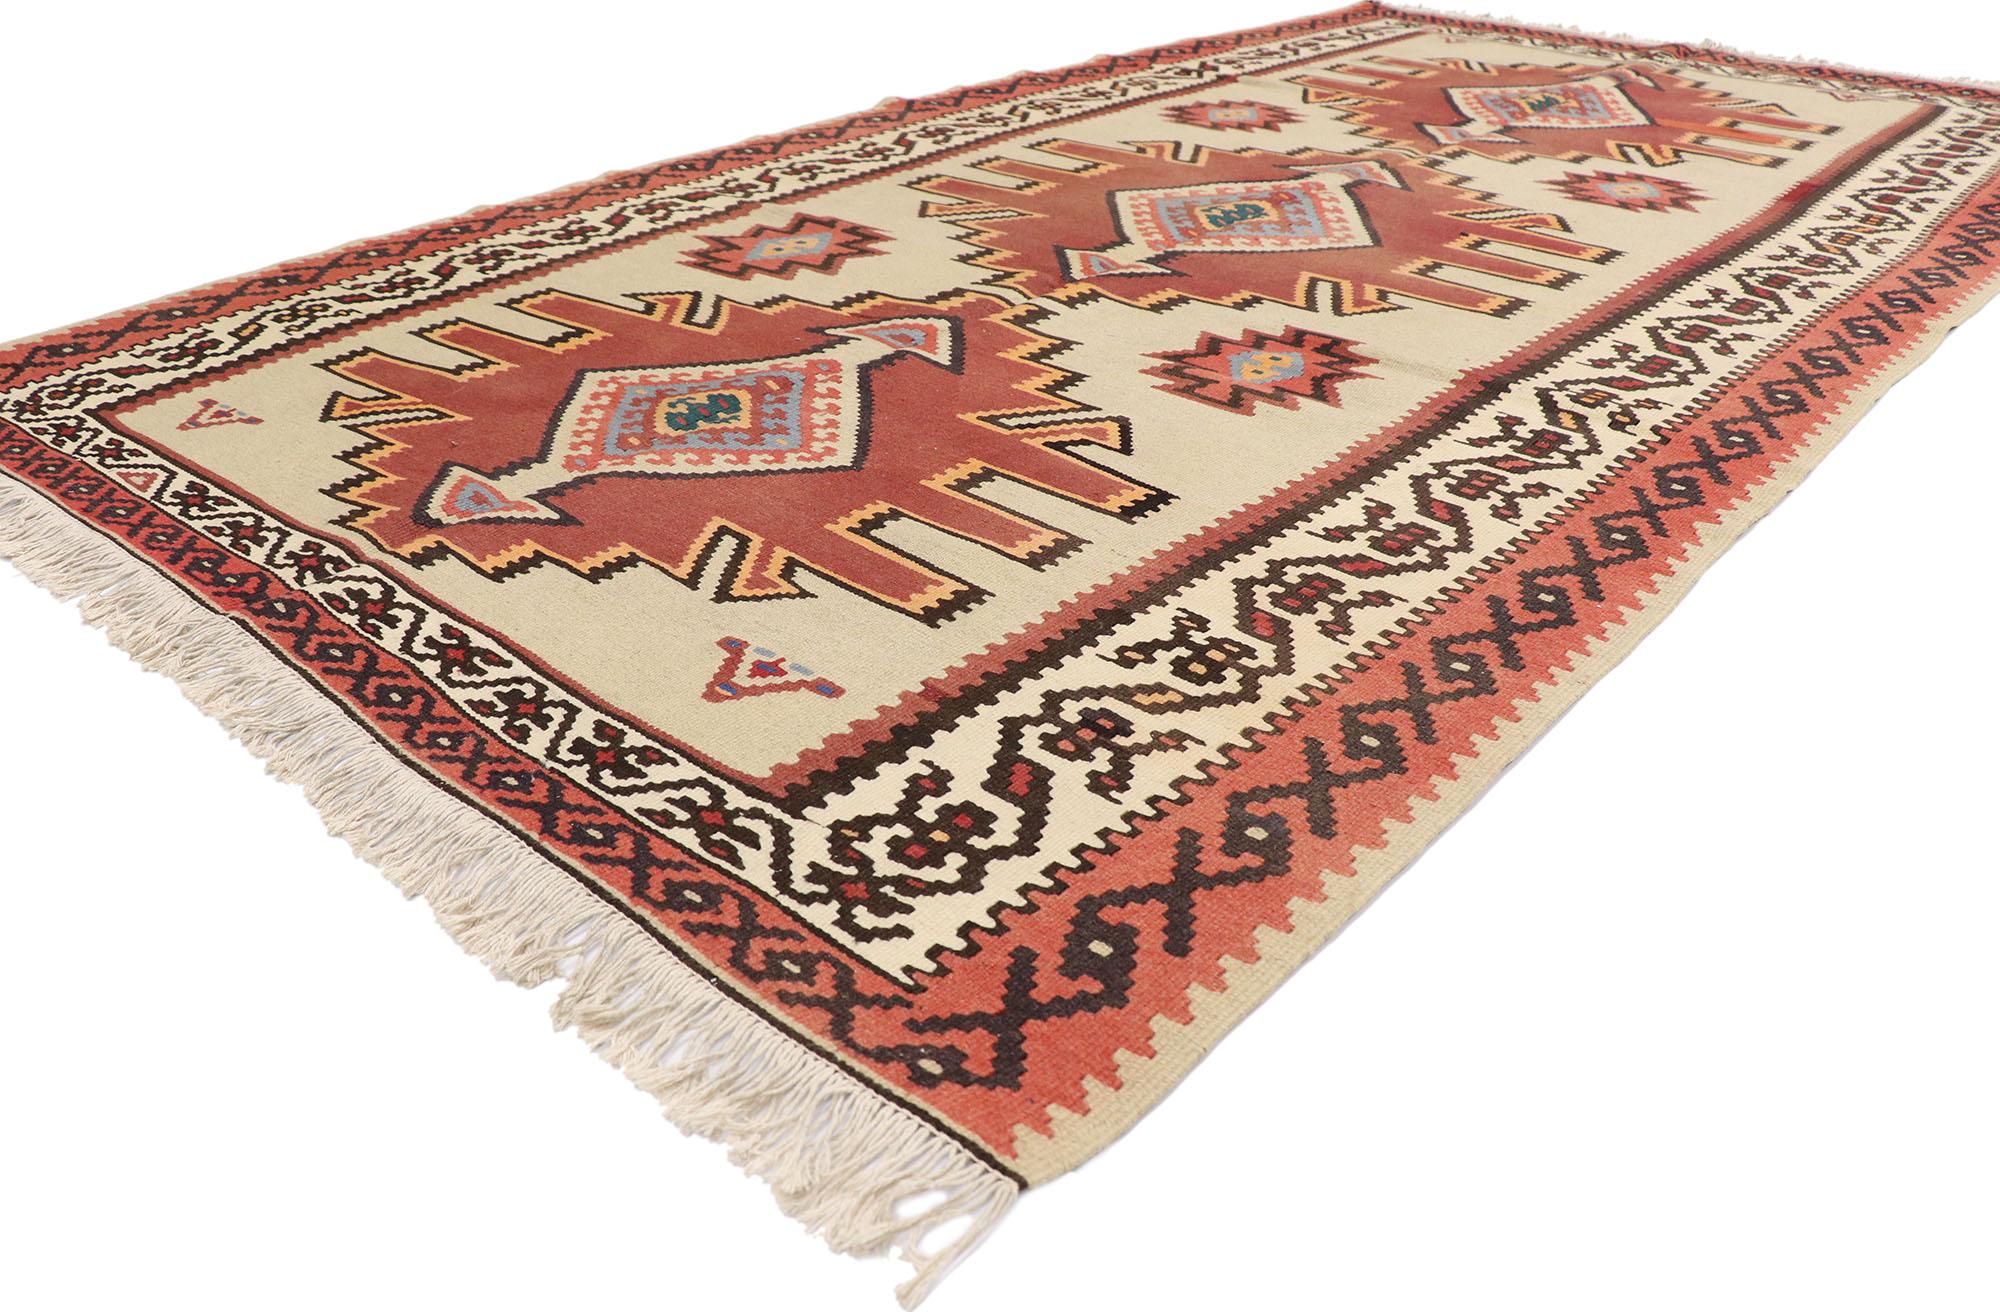 78005 Vintage Türkischer Kilim Teppich mit Tribal Stil 05'05 x 09'10. Dieser handgewebte türkische Kelimteppich aus Wolle im Vintage-Stil besticht durch seine winzigen Details und sein kühnes, ausdrucksstarkes Design, das mit einer warmen, erdigen